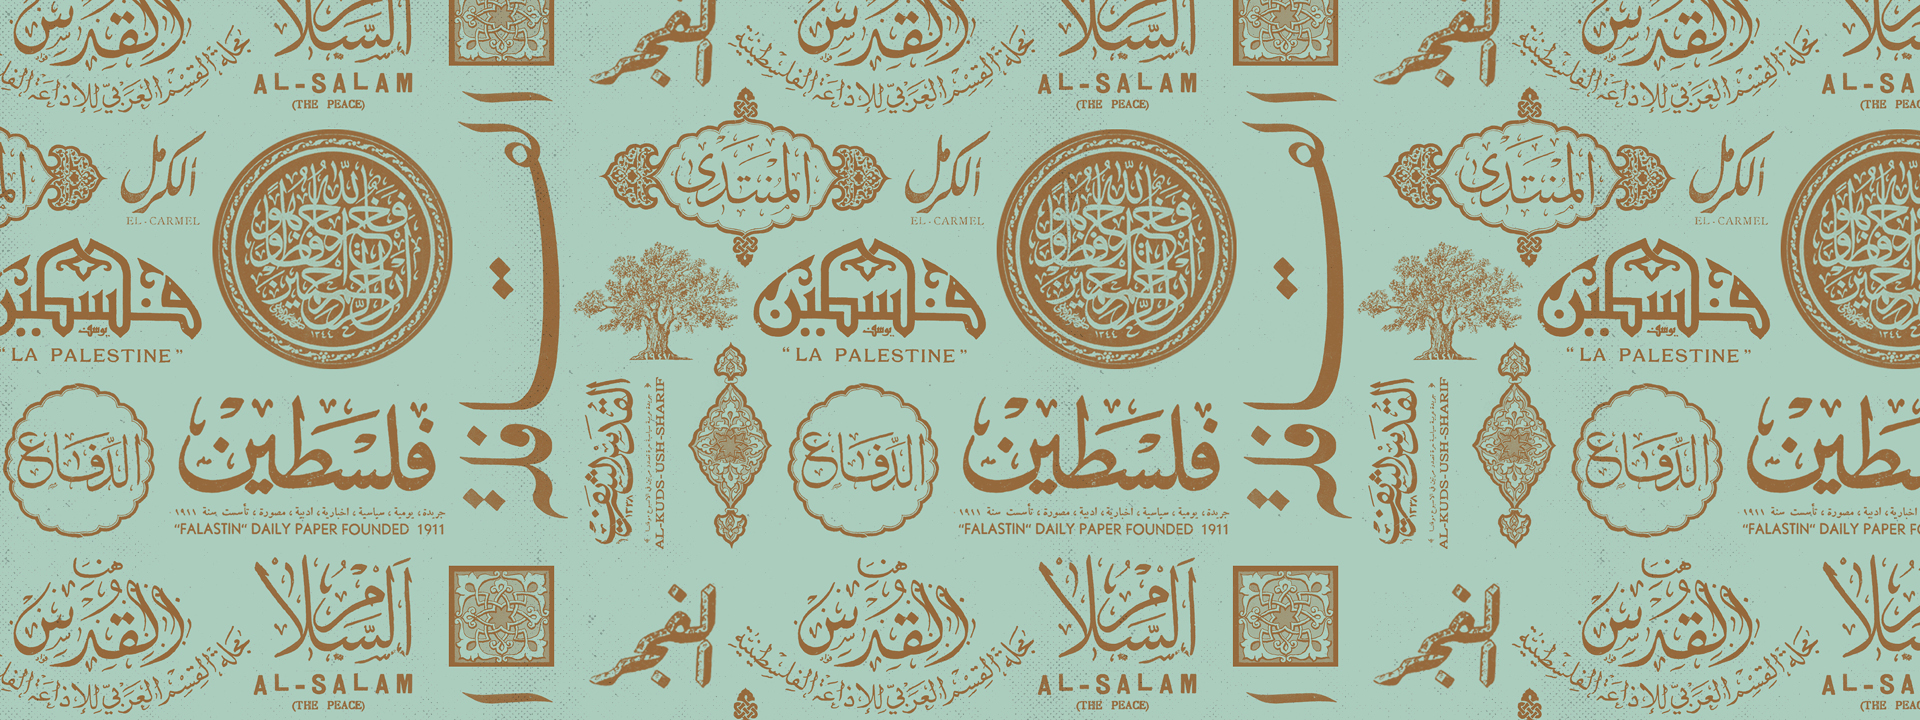 לוח הזמנים של חודש רמדאן (אמסאכיה) 2020/1441